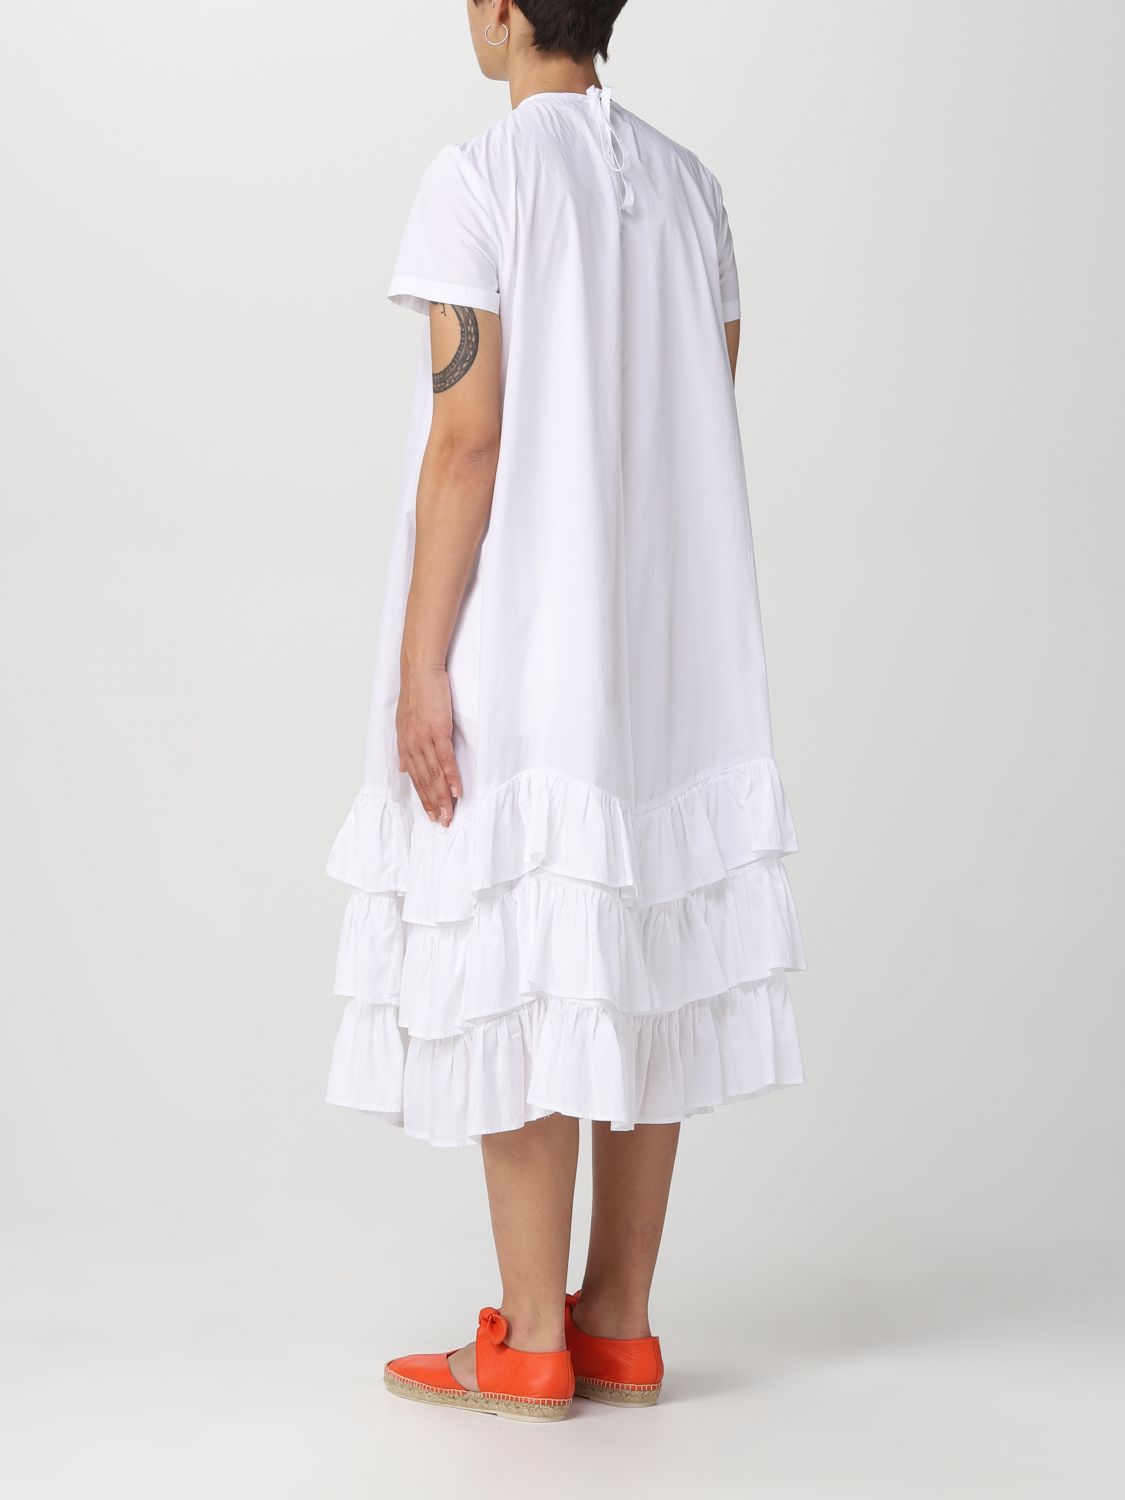 Vestido Semicouture: Vestido Semicouture para mujer blanco 2